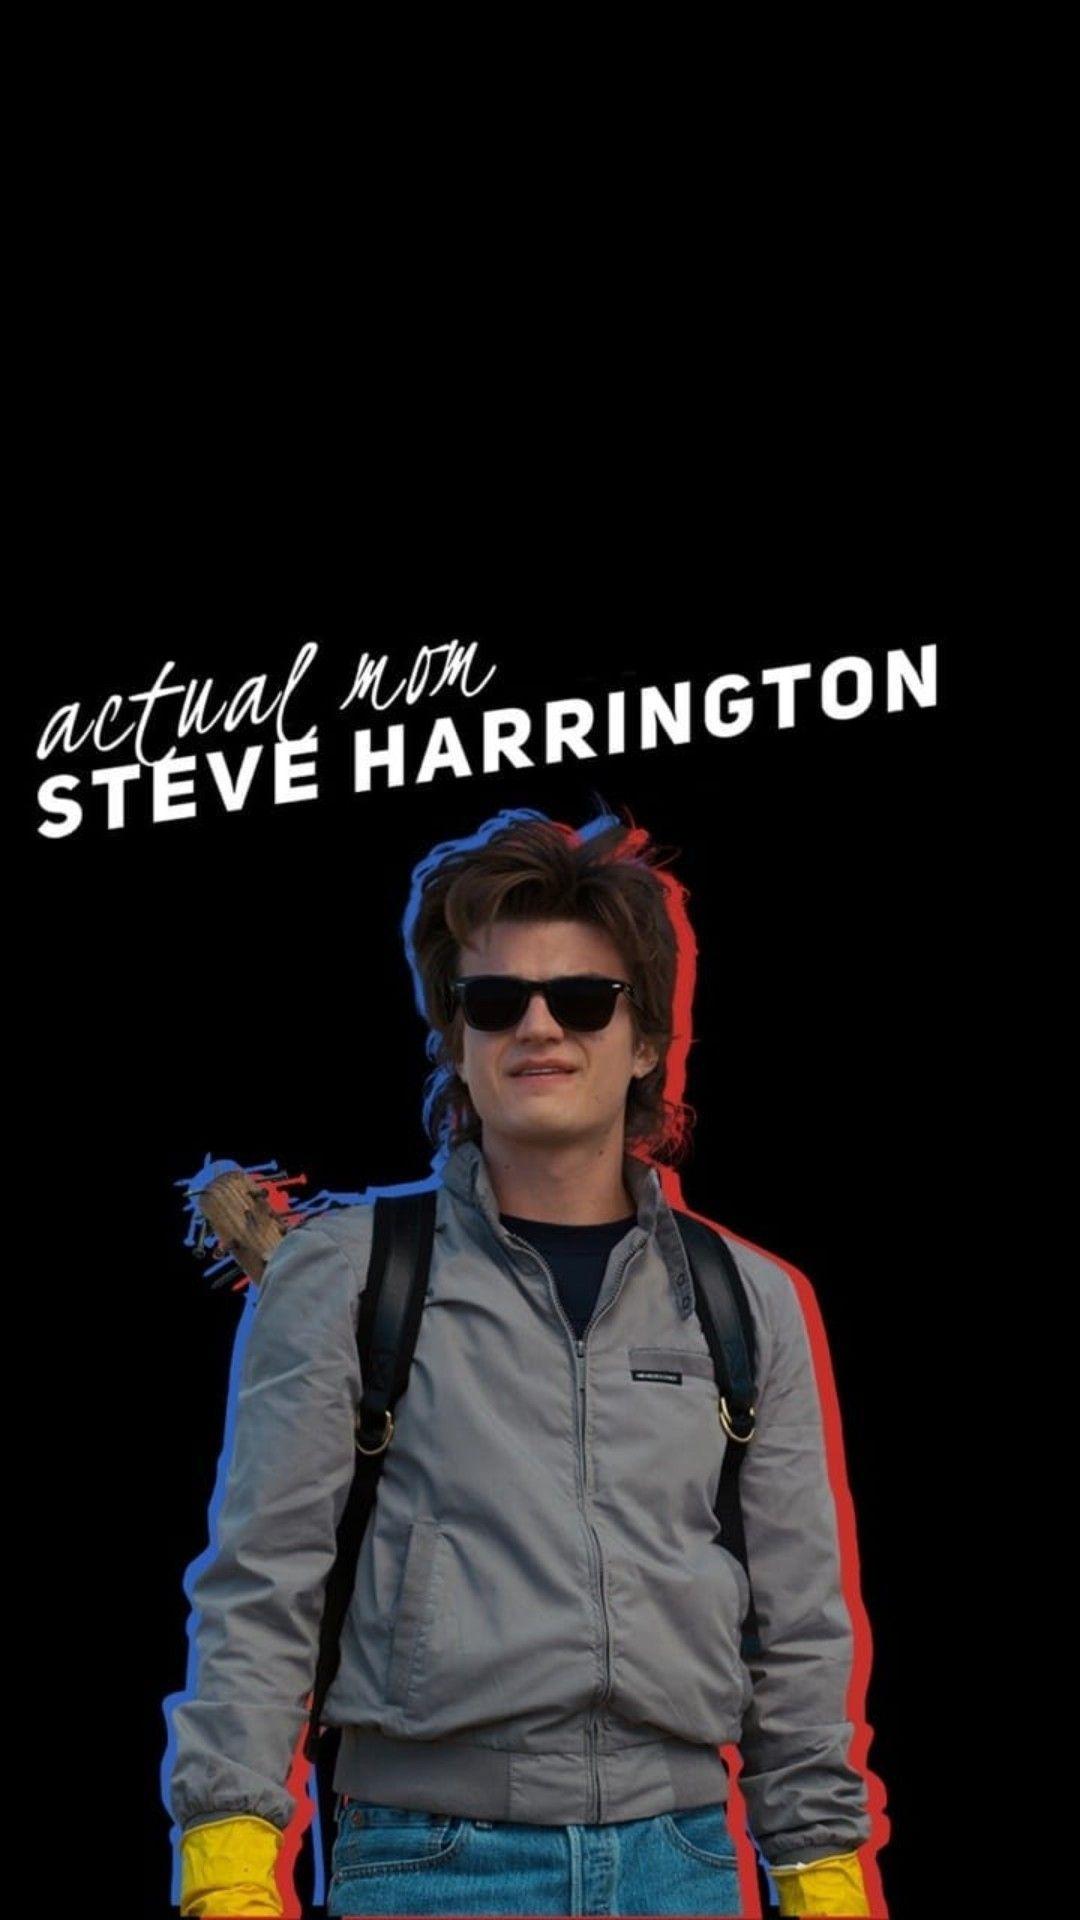 Steve Harrington Wallpapers  Top 30 Best Steve Harrington Wallpapers  HQ 